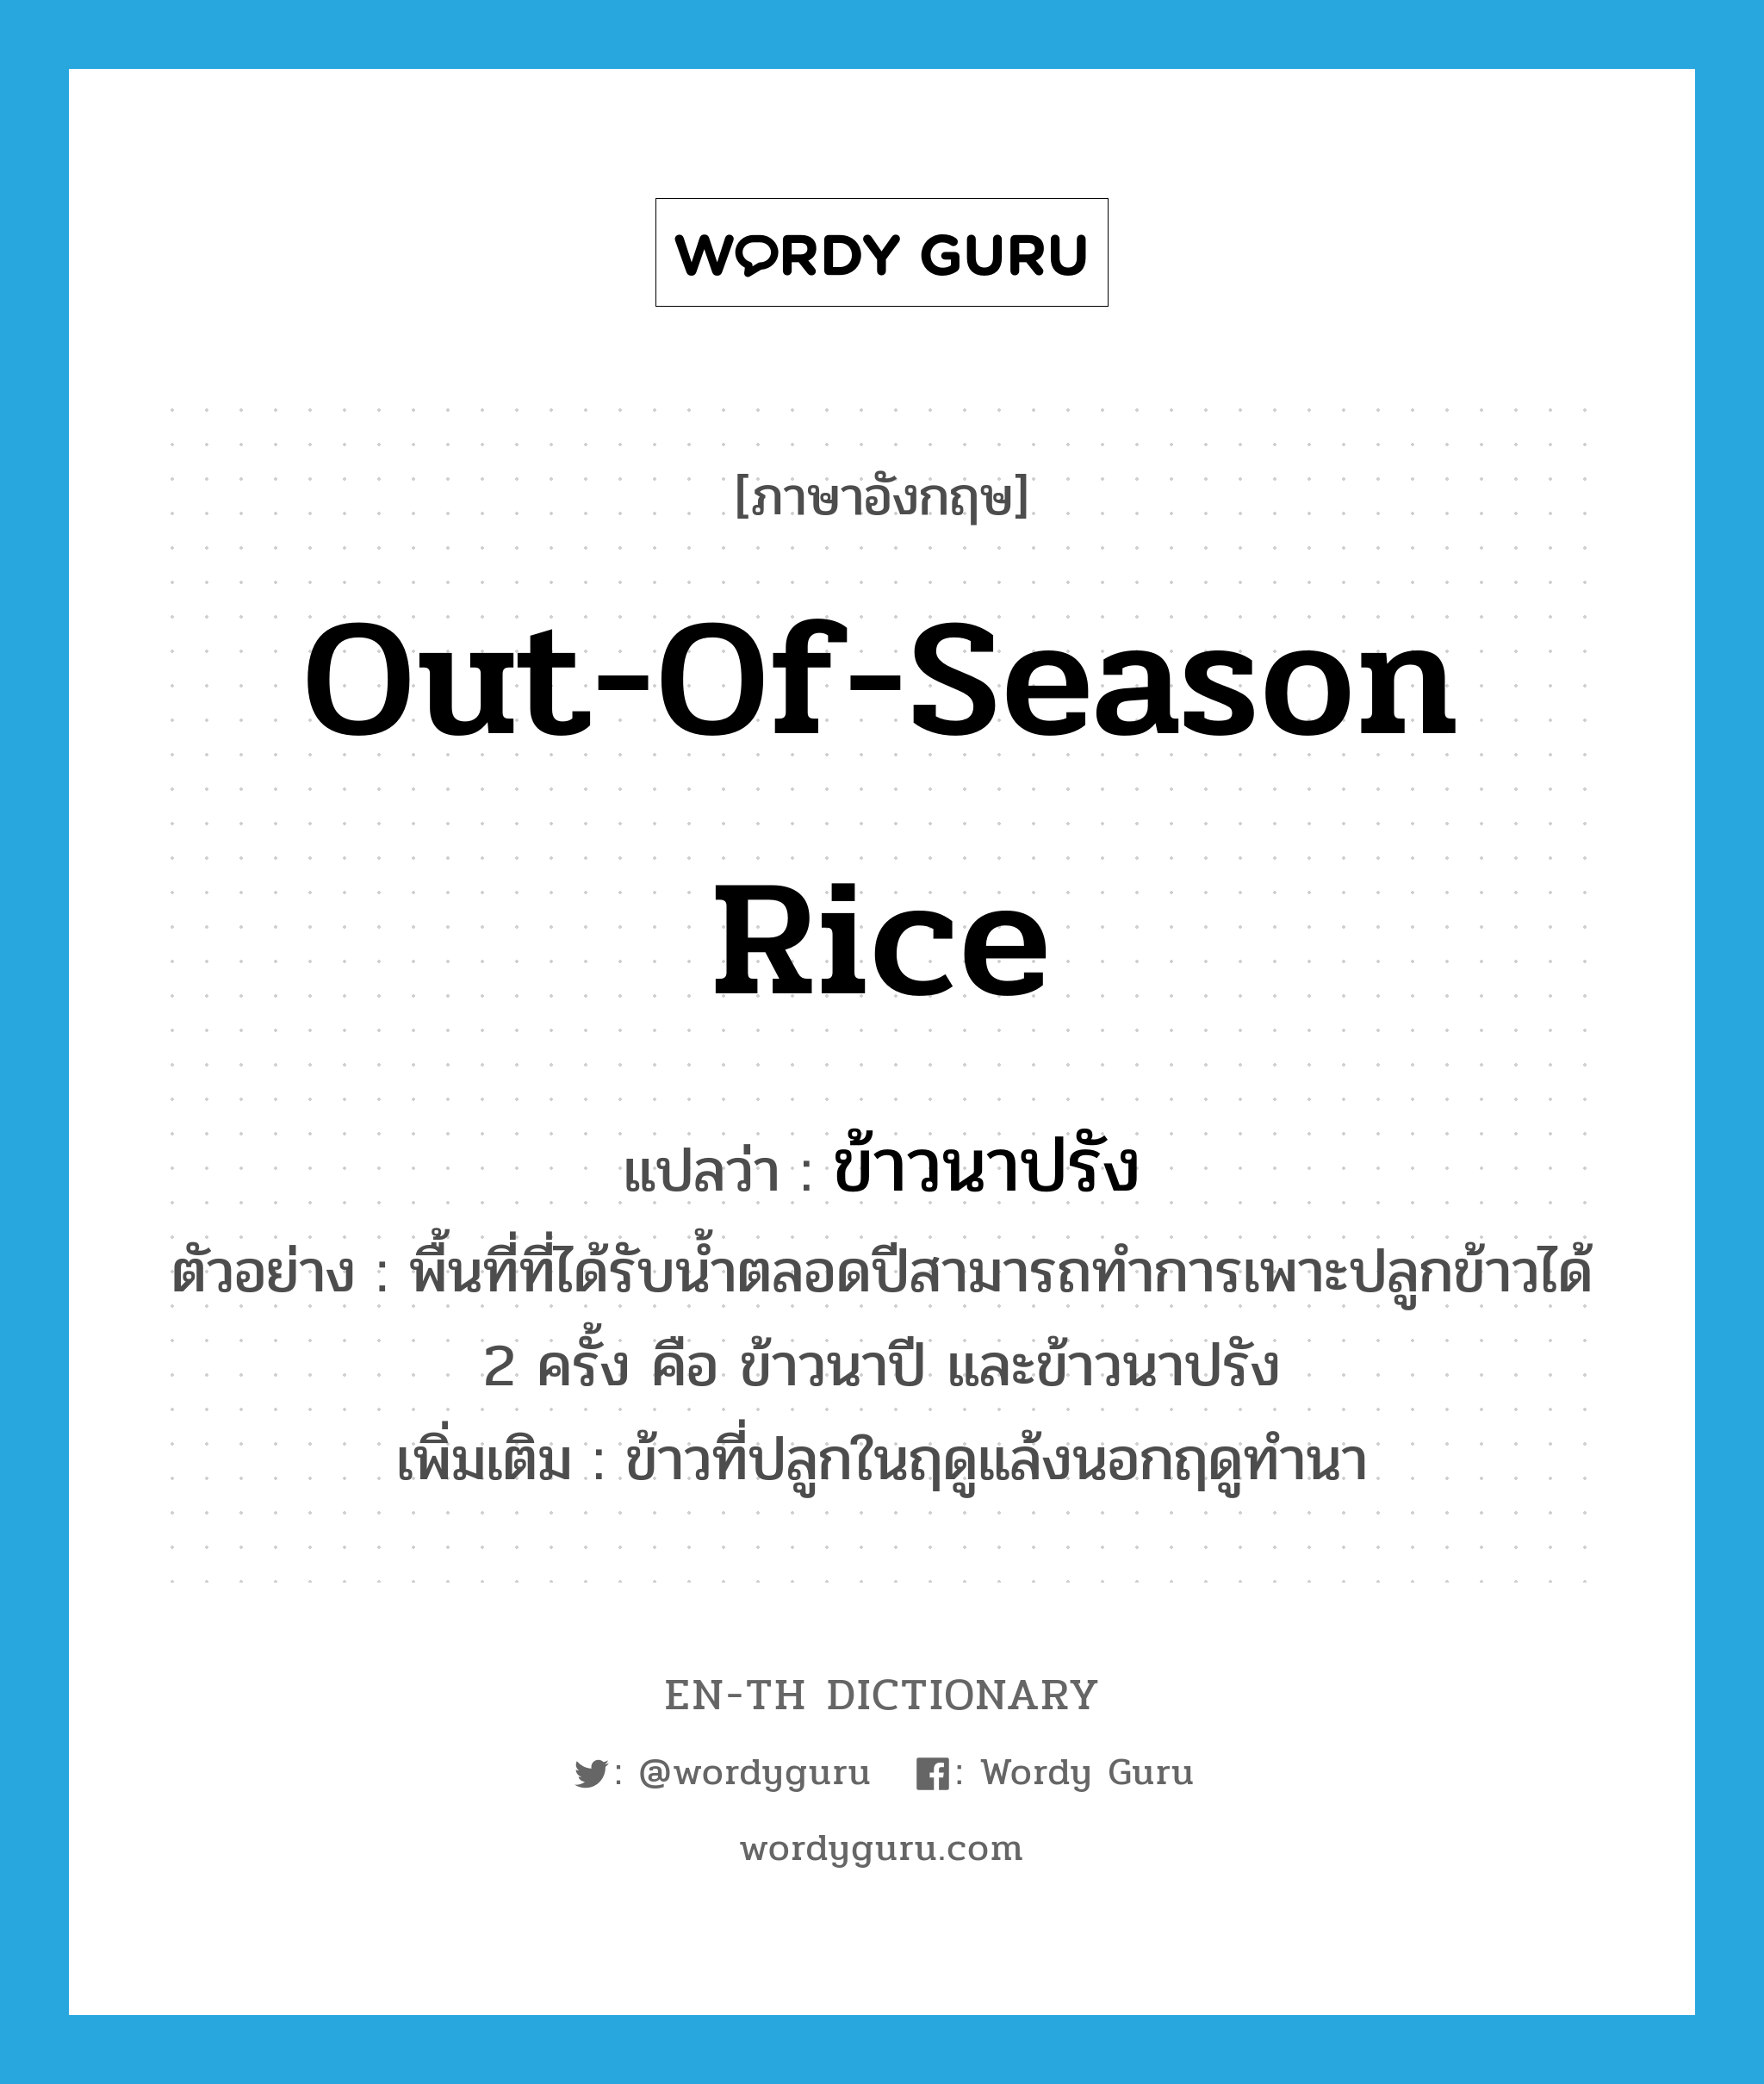 out-of-season rice แปลว่า?, คำศัพท์ภาษาอังกฤษ out-of-season rice แปลว่า ข้าวนาปรัง ประเภท N ตัวอย่าง พื้นที่ที่ได้รับน้ำตลอดปีสามารถทำการเพาะปลูกข้าวได้ 2 ครั้ง คือ ข้าวนาปี และข้าวนาปรัง เพิ่มเติม ข้าวที่ปลูกในฤดูแล้งนอกฤดูทำนา หมวด N